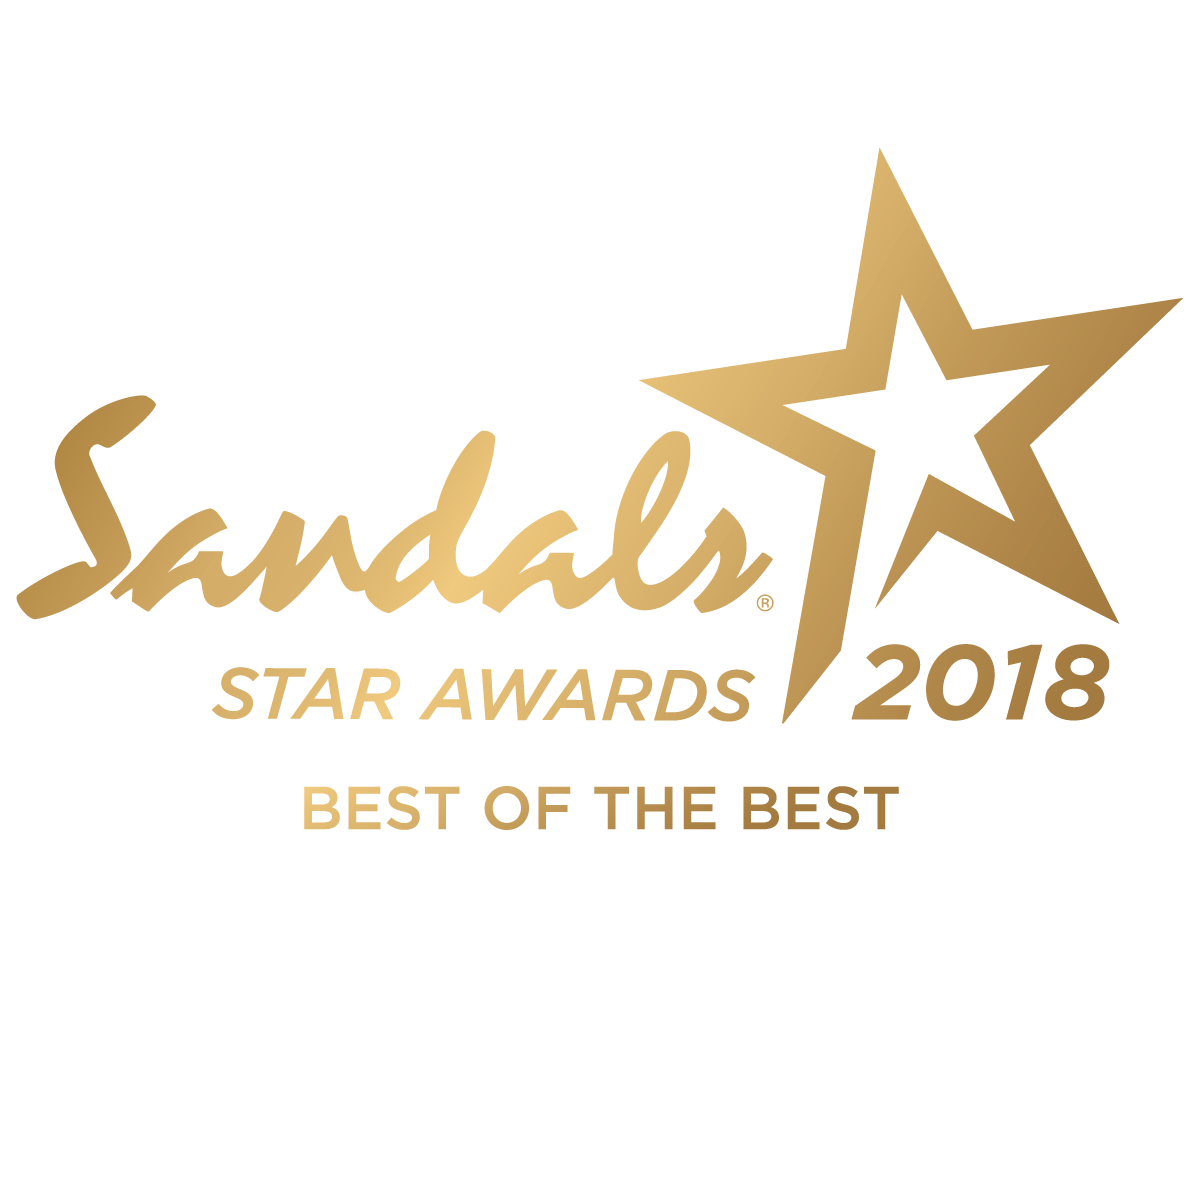 https://lindadancer.com/wp-content/uploads/2019/02/Sandals-STAR-AWARDS-2018.png